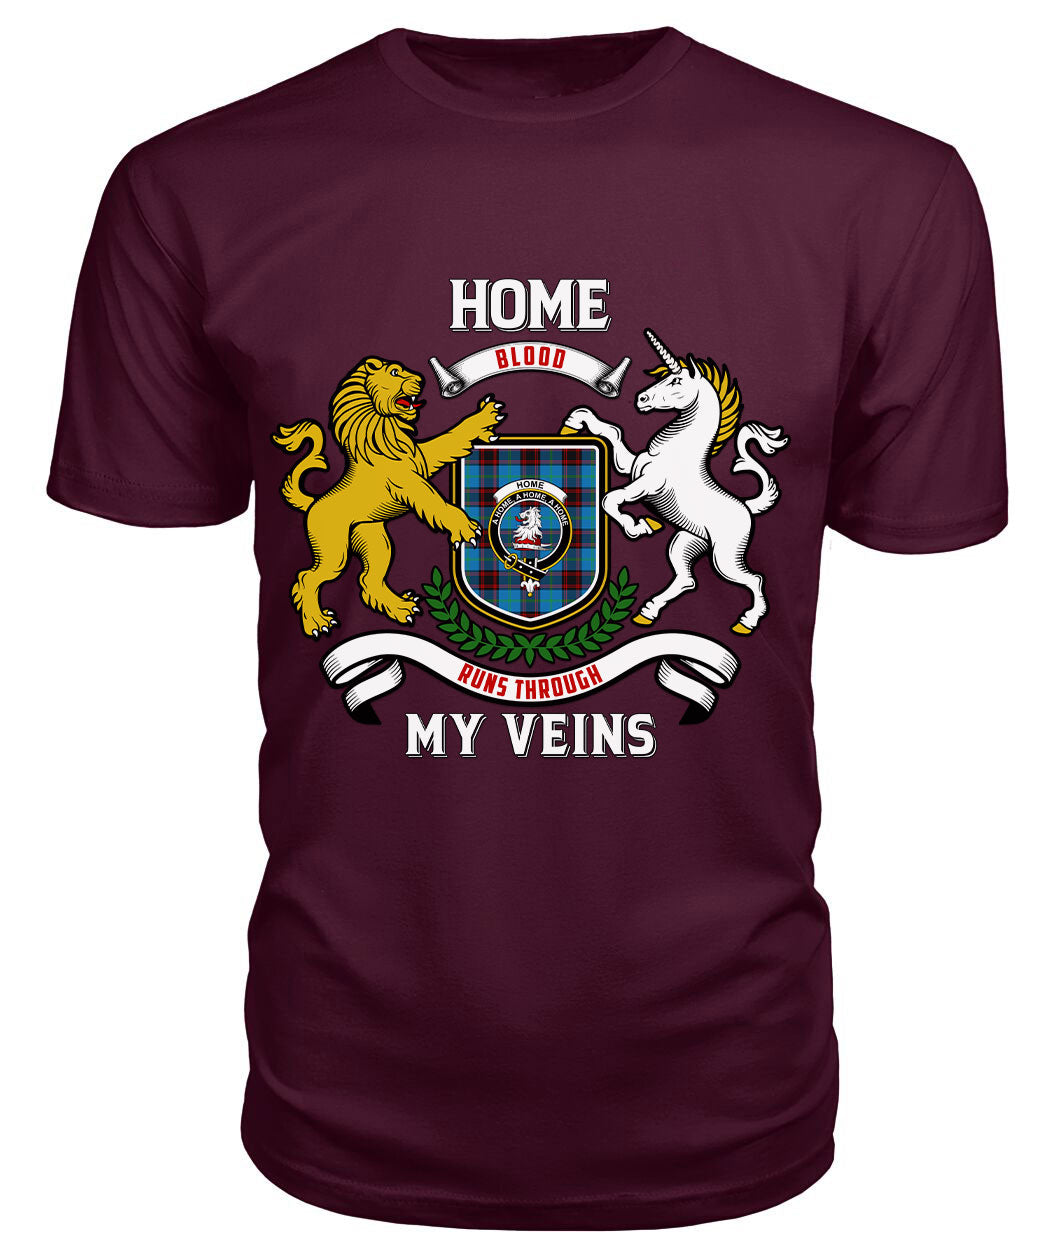 Home Ancient Tartan Crest 2D T-shirt - Blood Runs Through My Veins Style